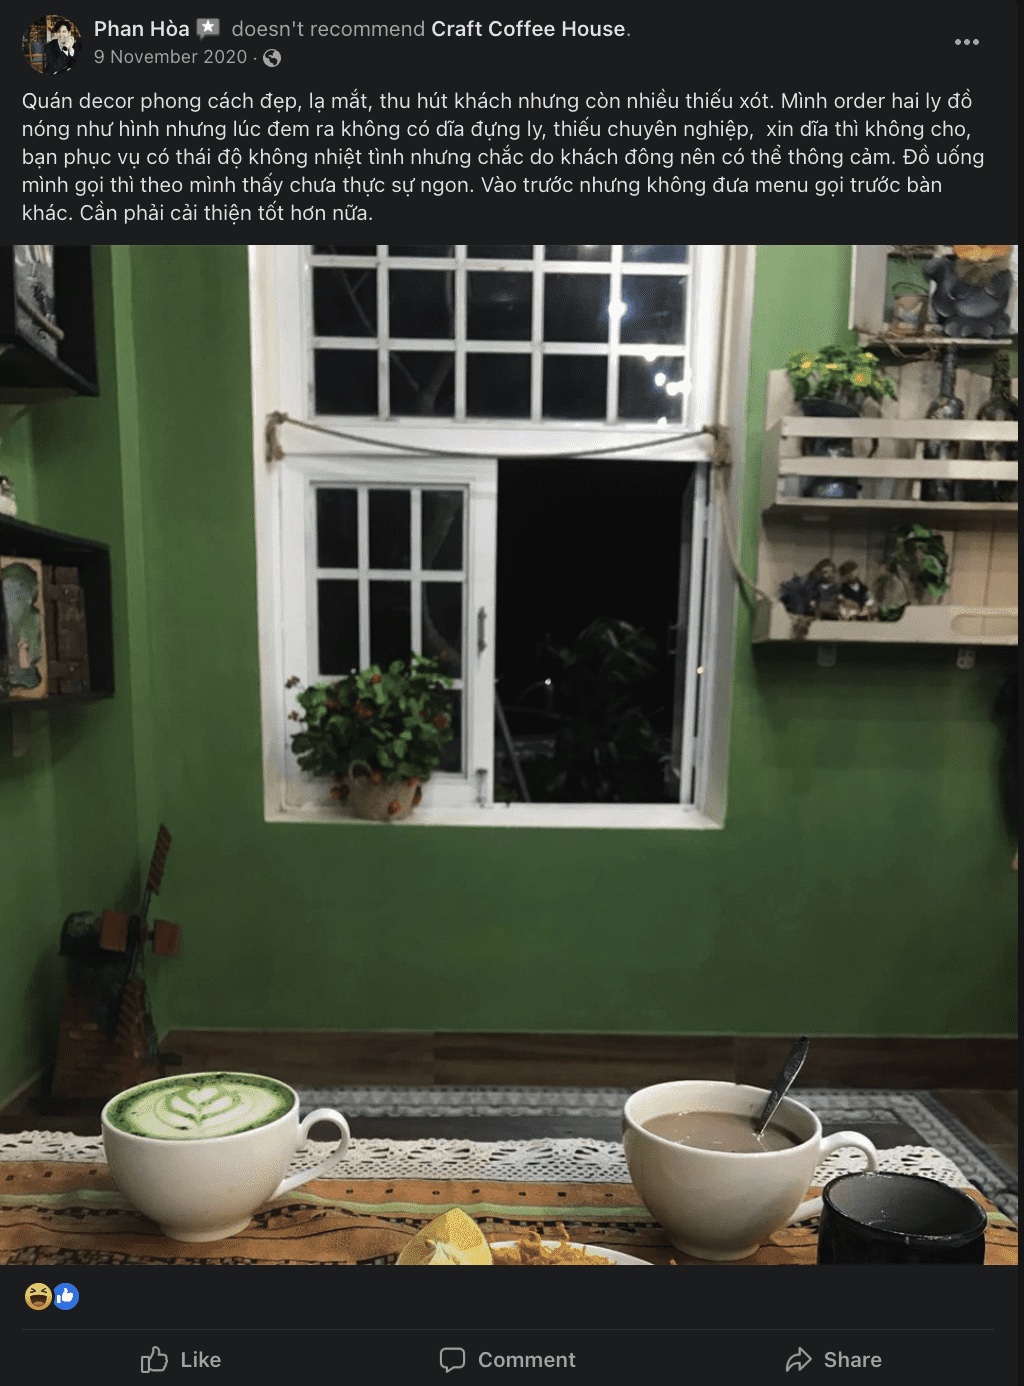 Craft Coffee House Quảng Bình nổi bật với thiết kế ma mị, huyền bí 12